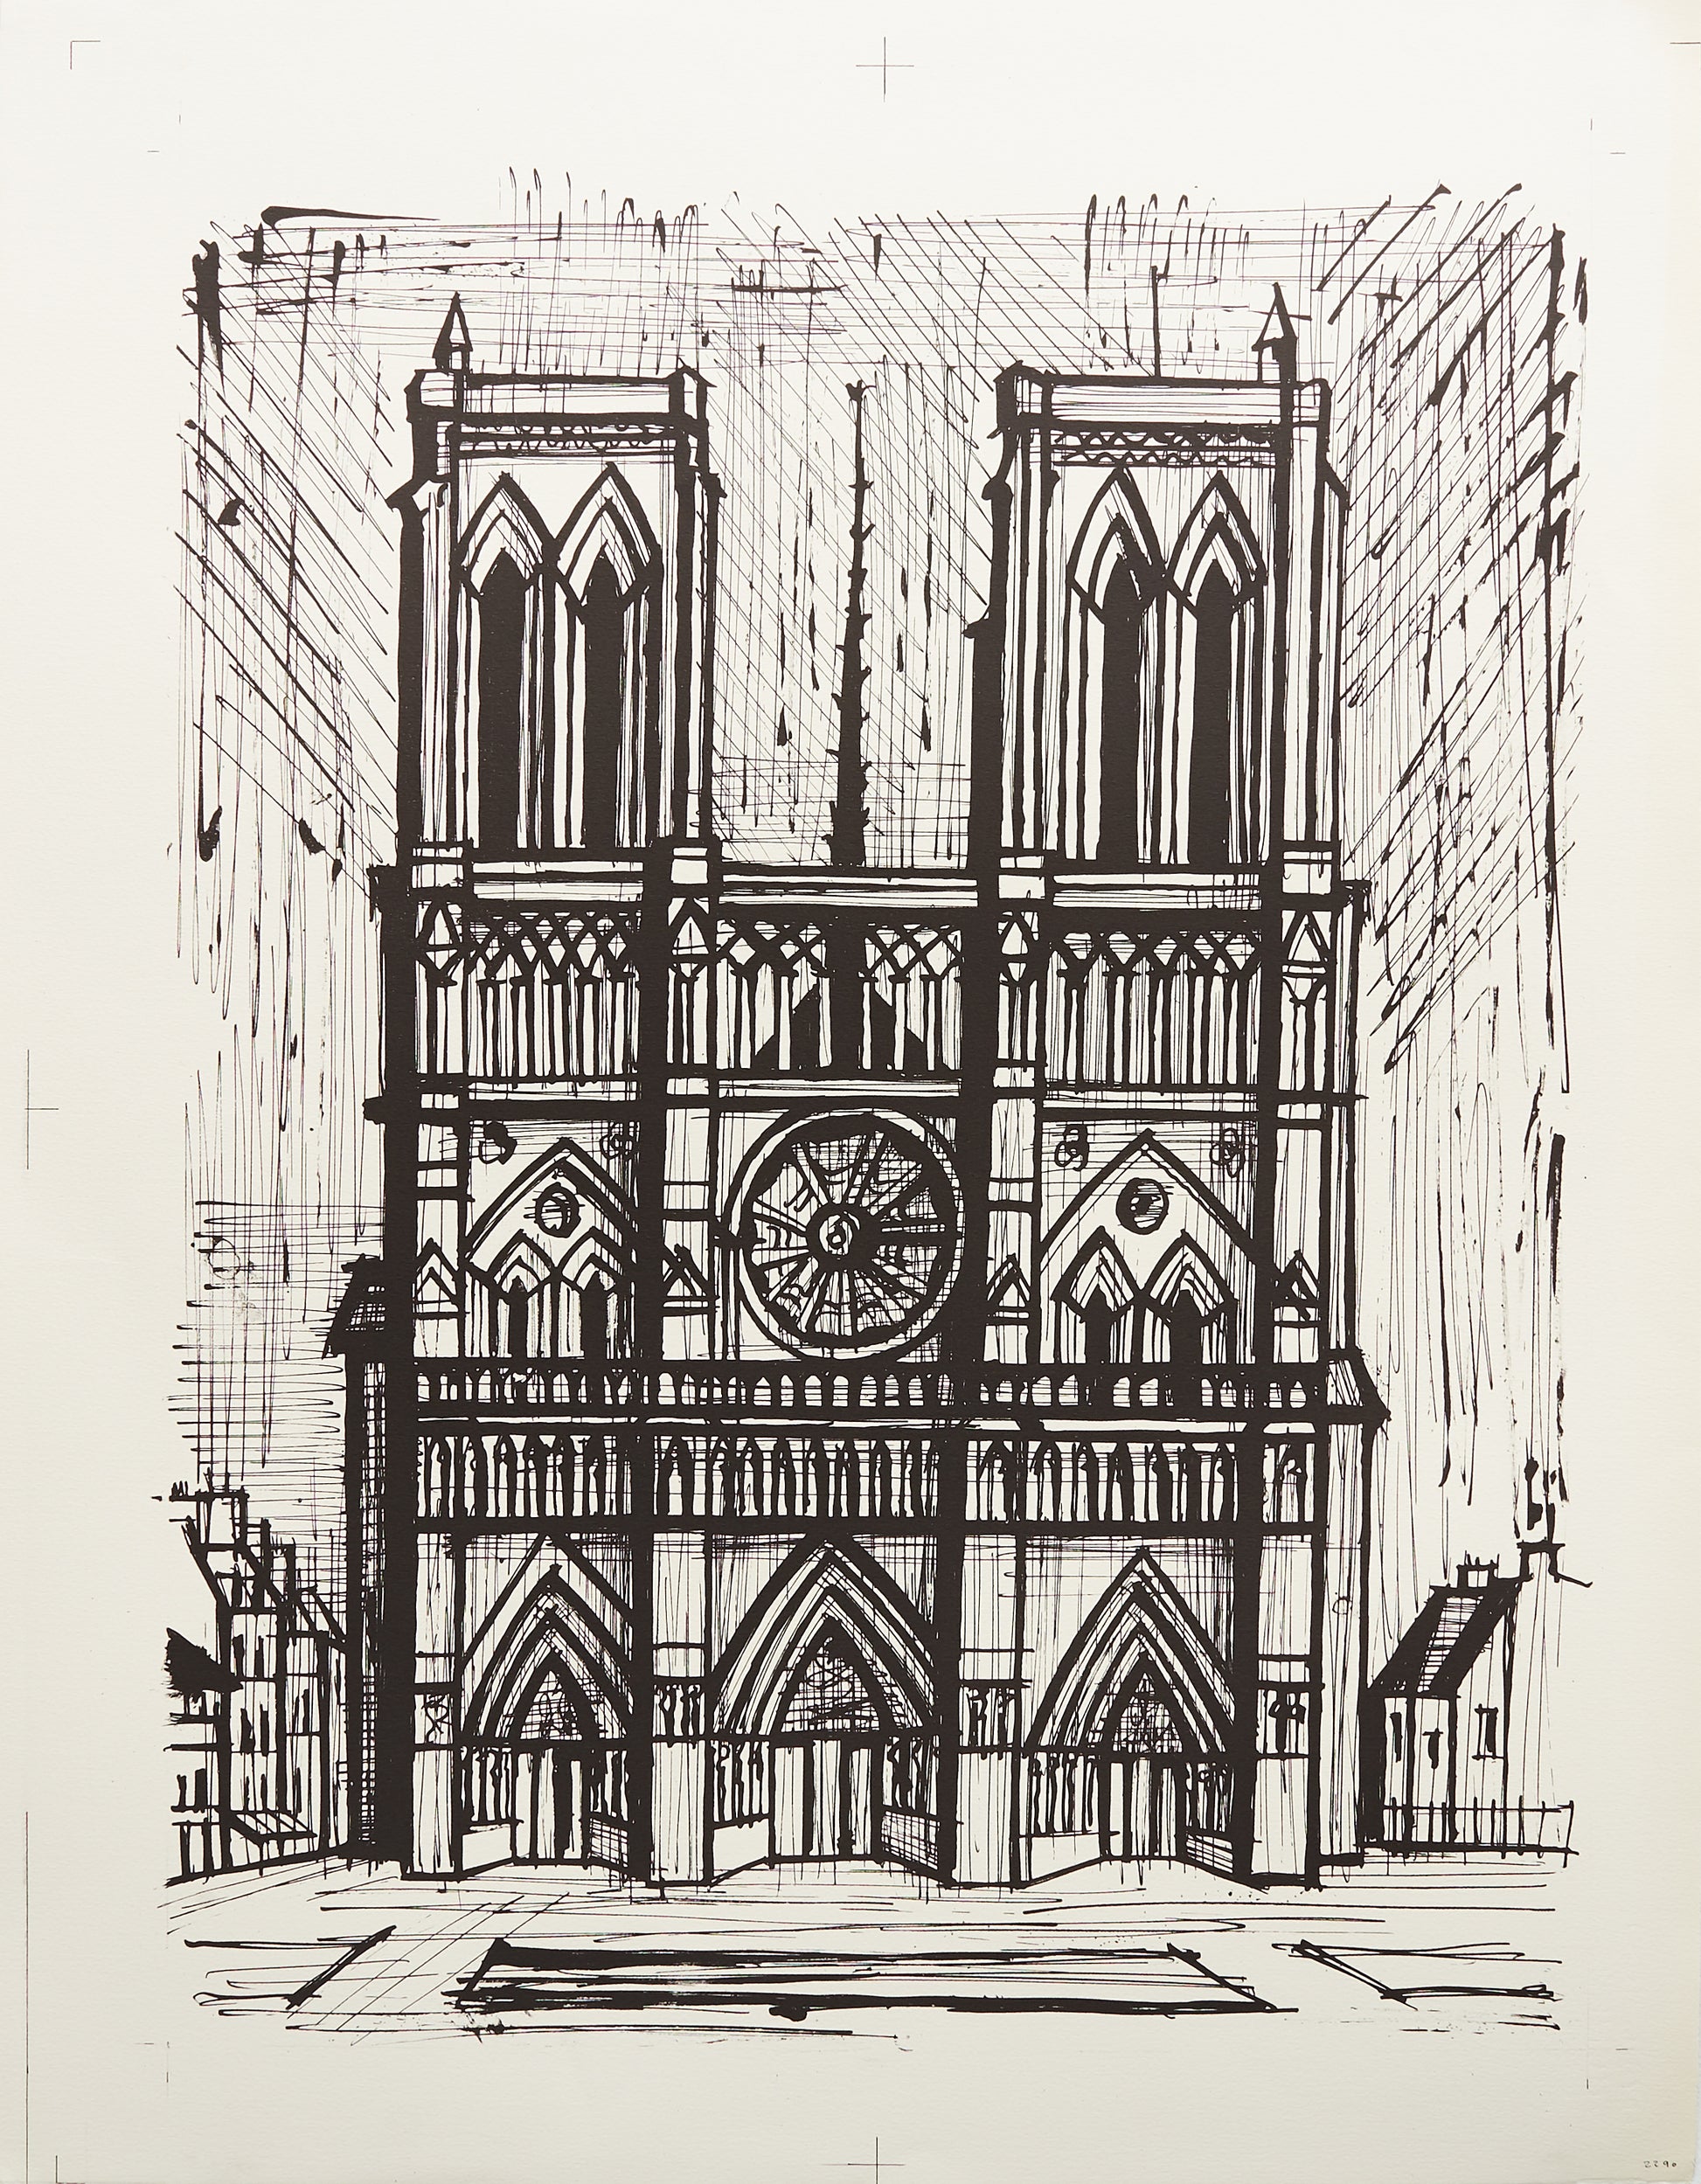 Notre Dame (B&W) by Bernard Buffet - Mourlot Editions - Fine_Art - Poster - Lithograph - Wall Art - Vintage - Prints - Original